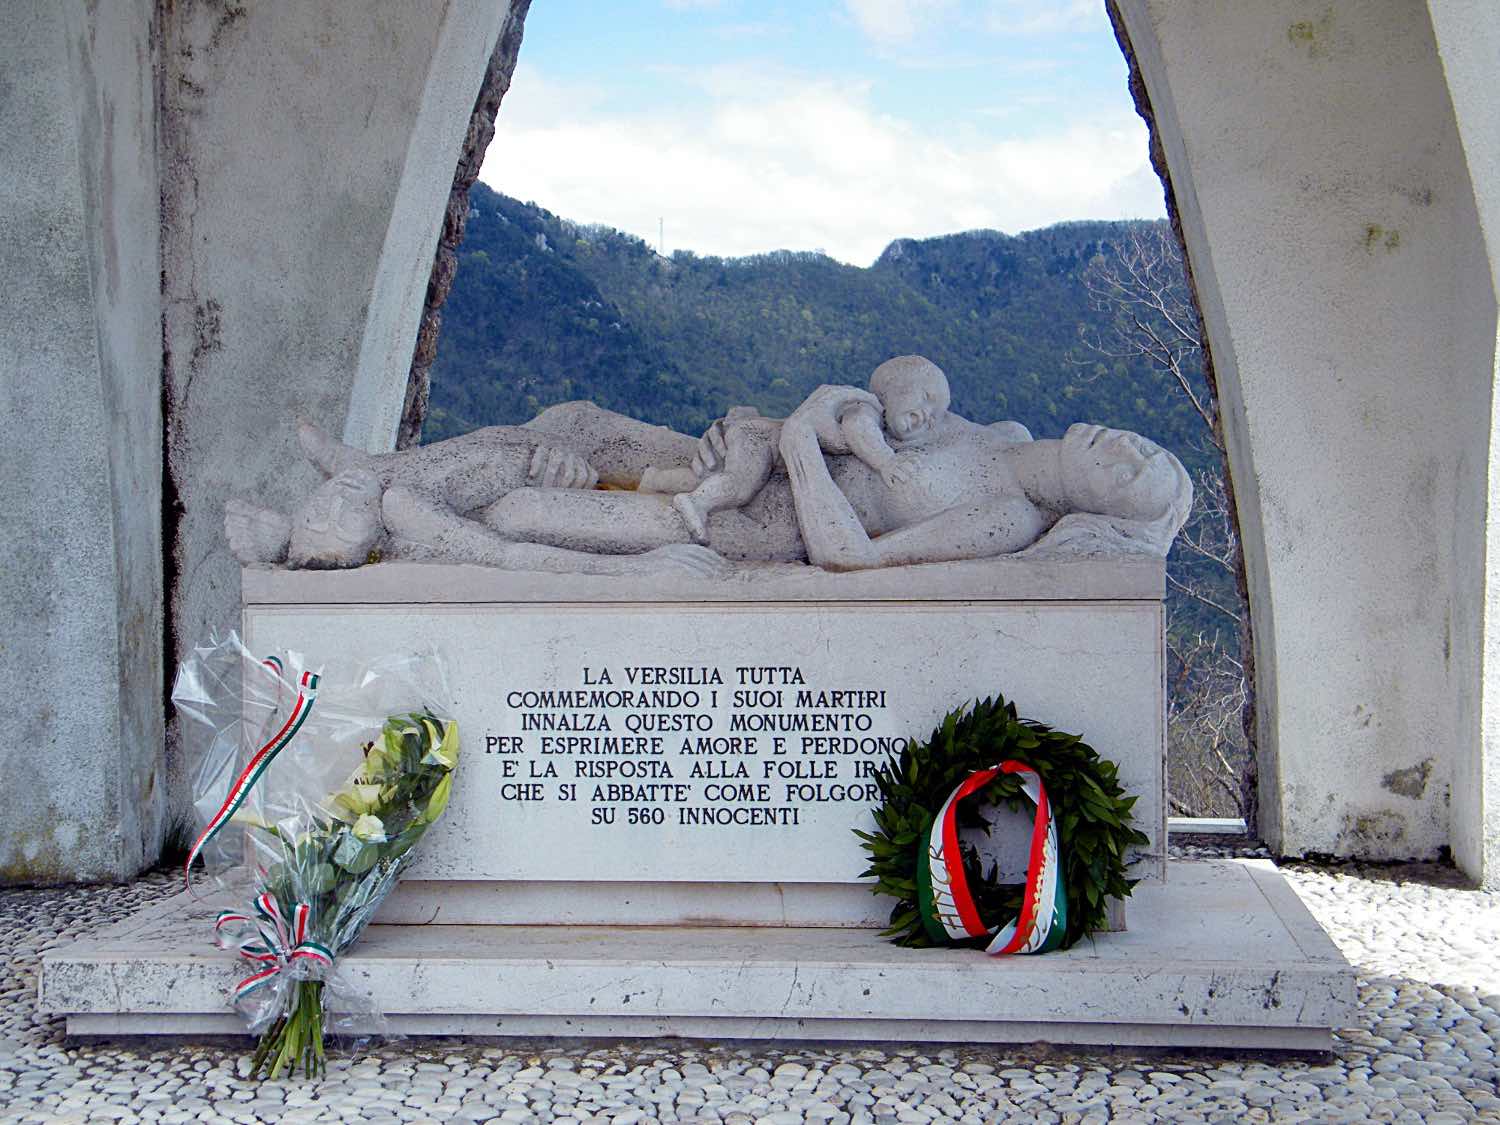 Il tragico racconto dell'eccidio di Sant'Anna di Stazzema, borgo toscano delle Alpi Apuane, avvenuto per mano dei nazifascisti nel 1944.